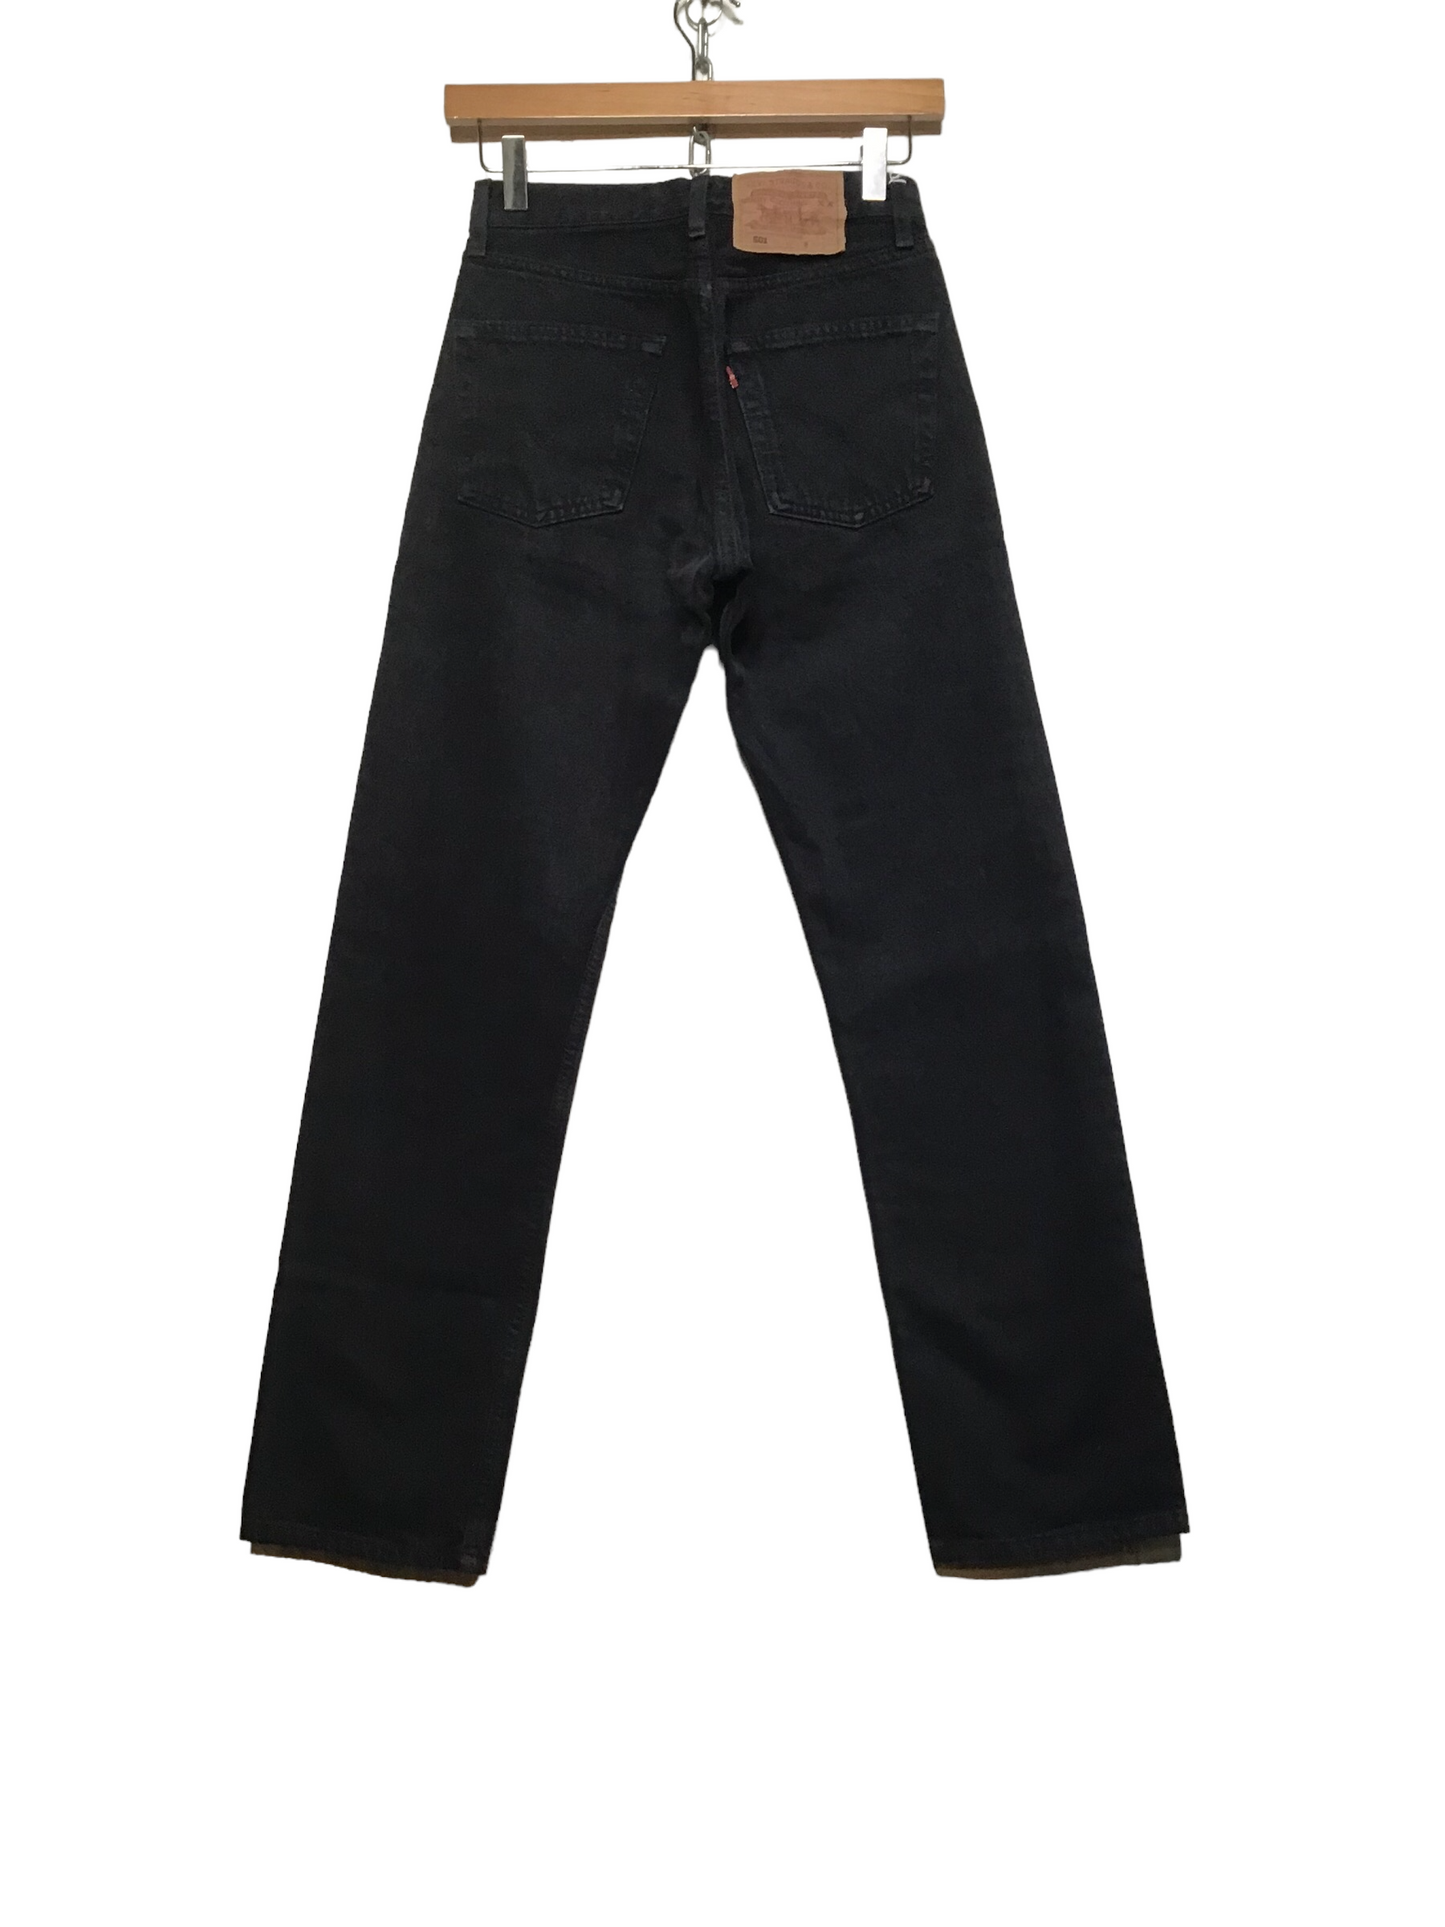 Levi 501 Black Jeans (27X30)